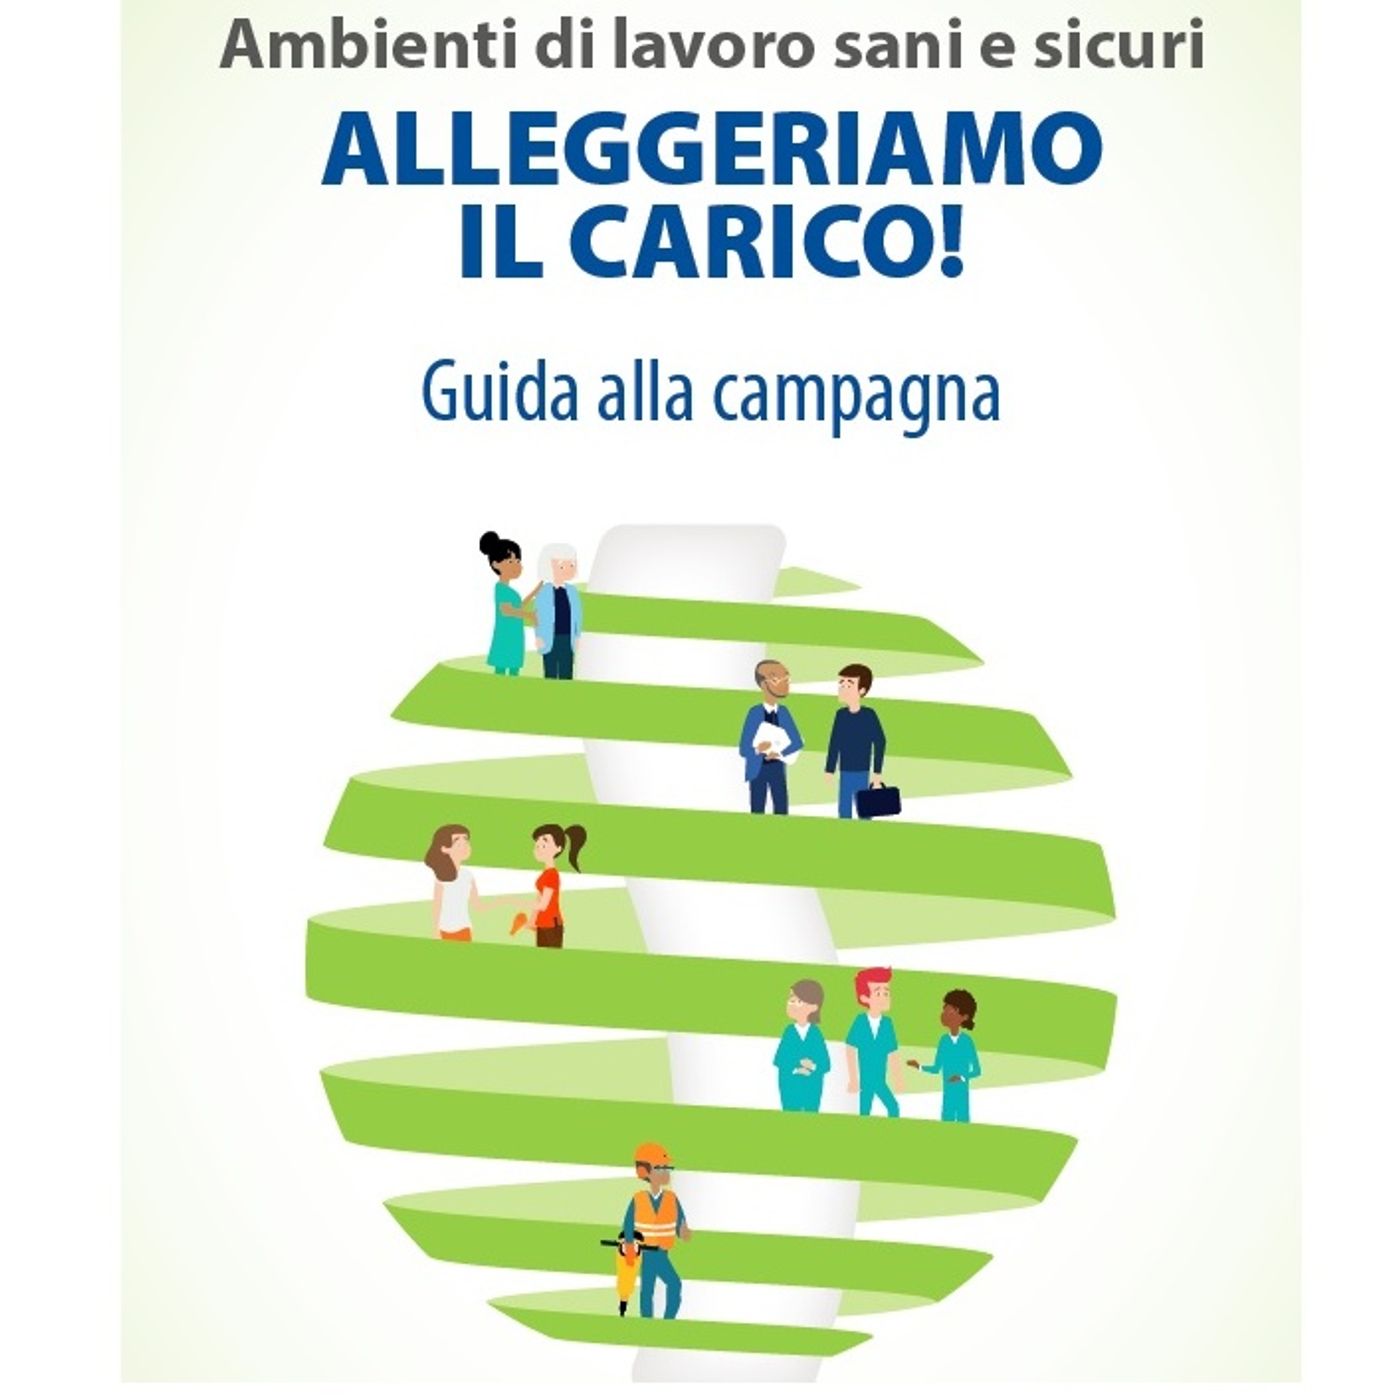 Disturbi muscoloscheletrici, al via in Italia la campagna Eu-Osha 2020-2022